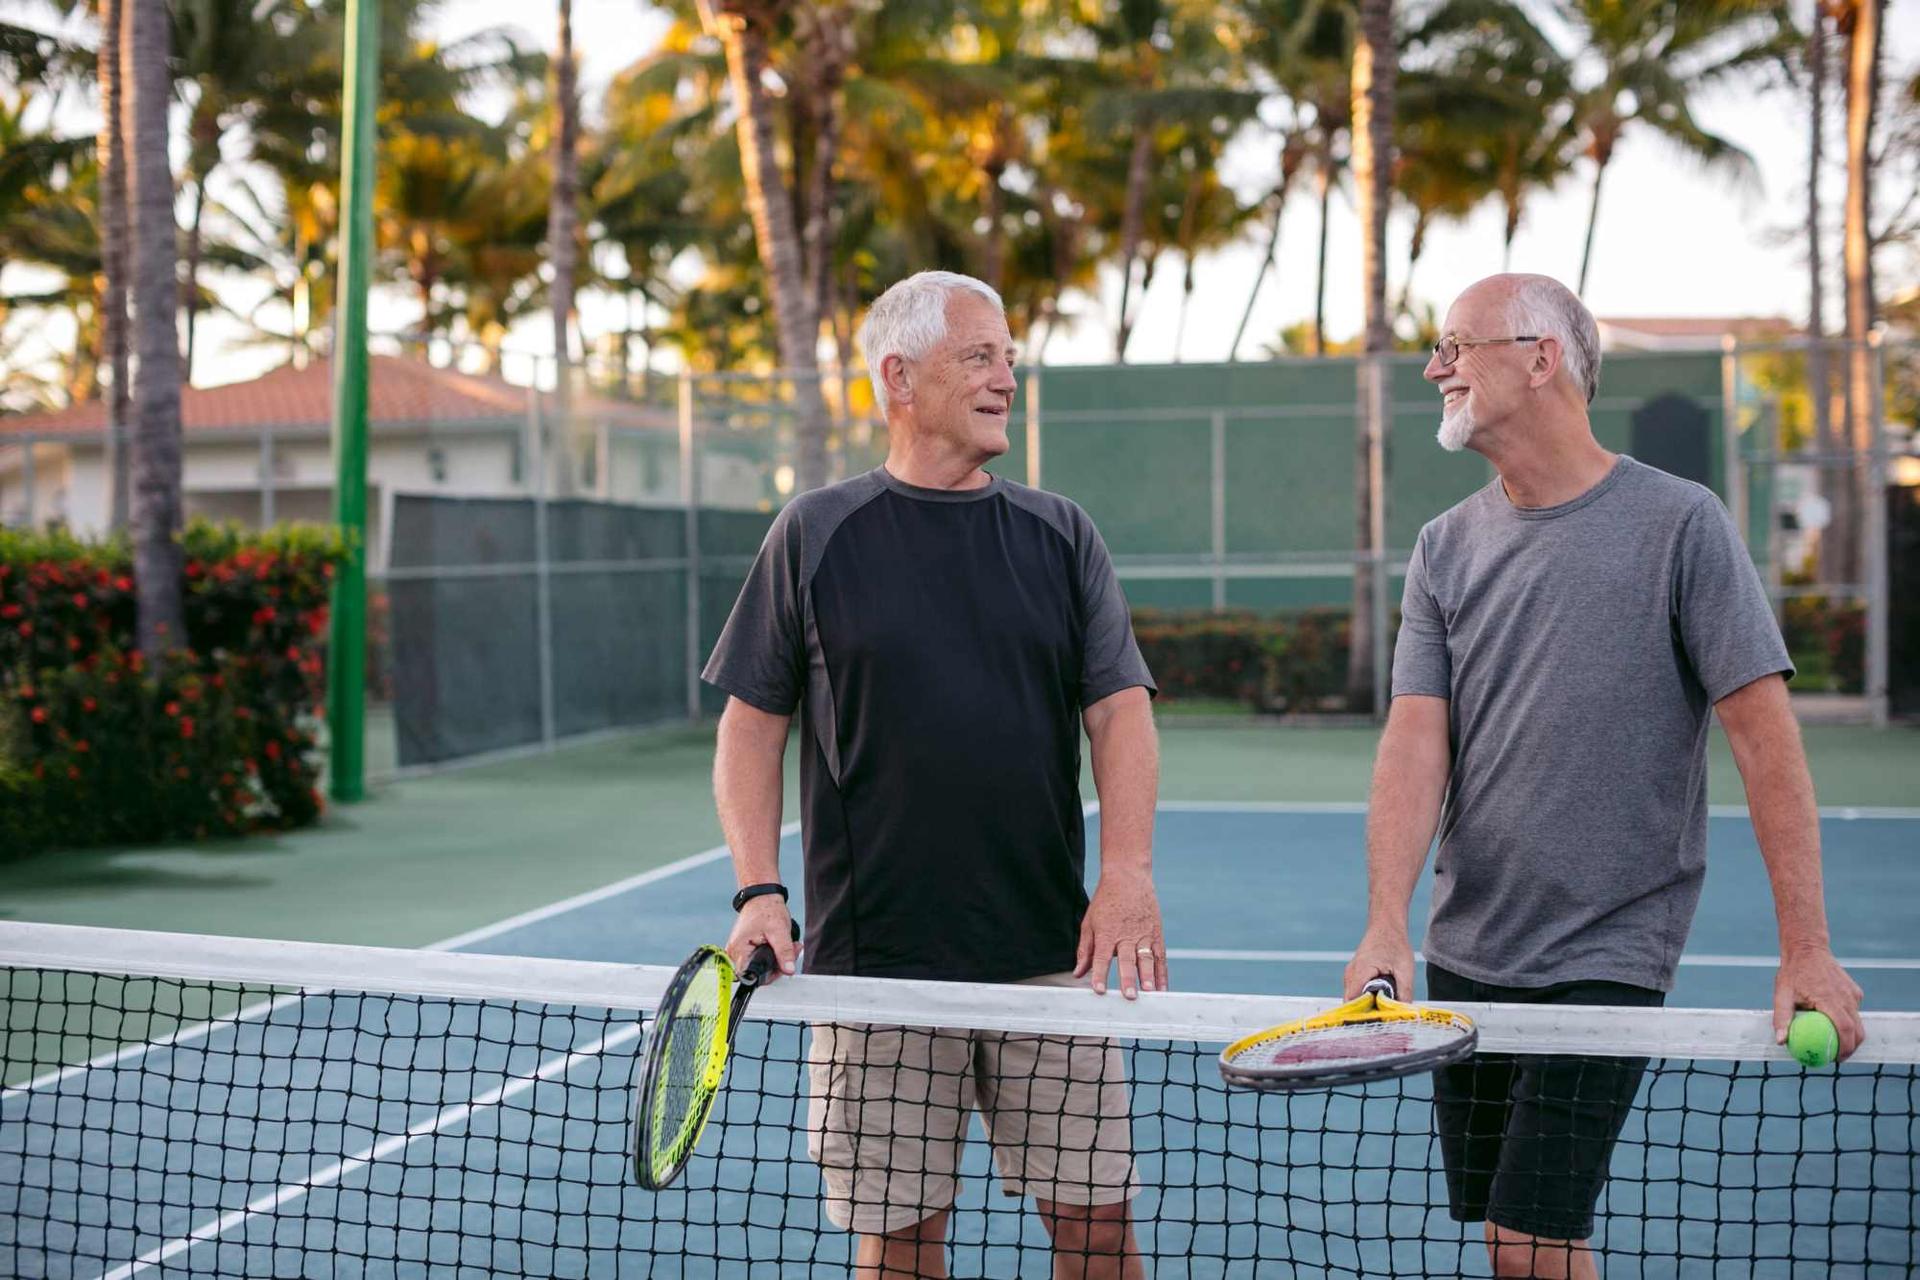 Darmspiegelung: Zwei ältere Männer stehen an einem Tennisnetz, halten Tennisschläger in der Hand und sehen sich an.